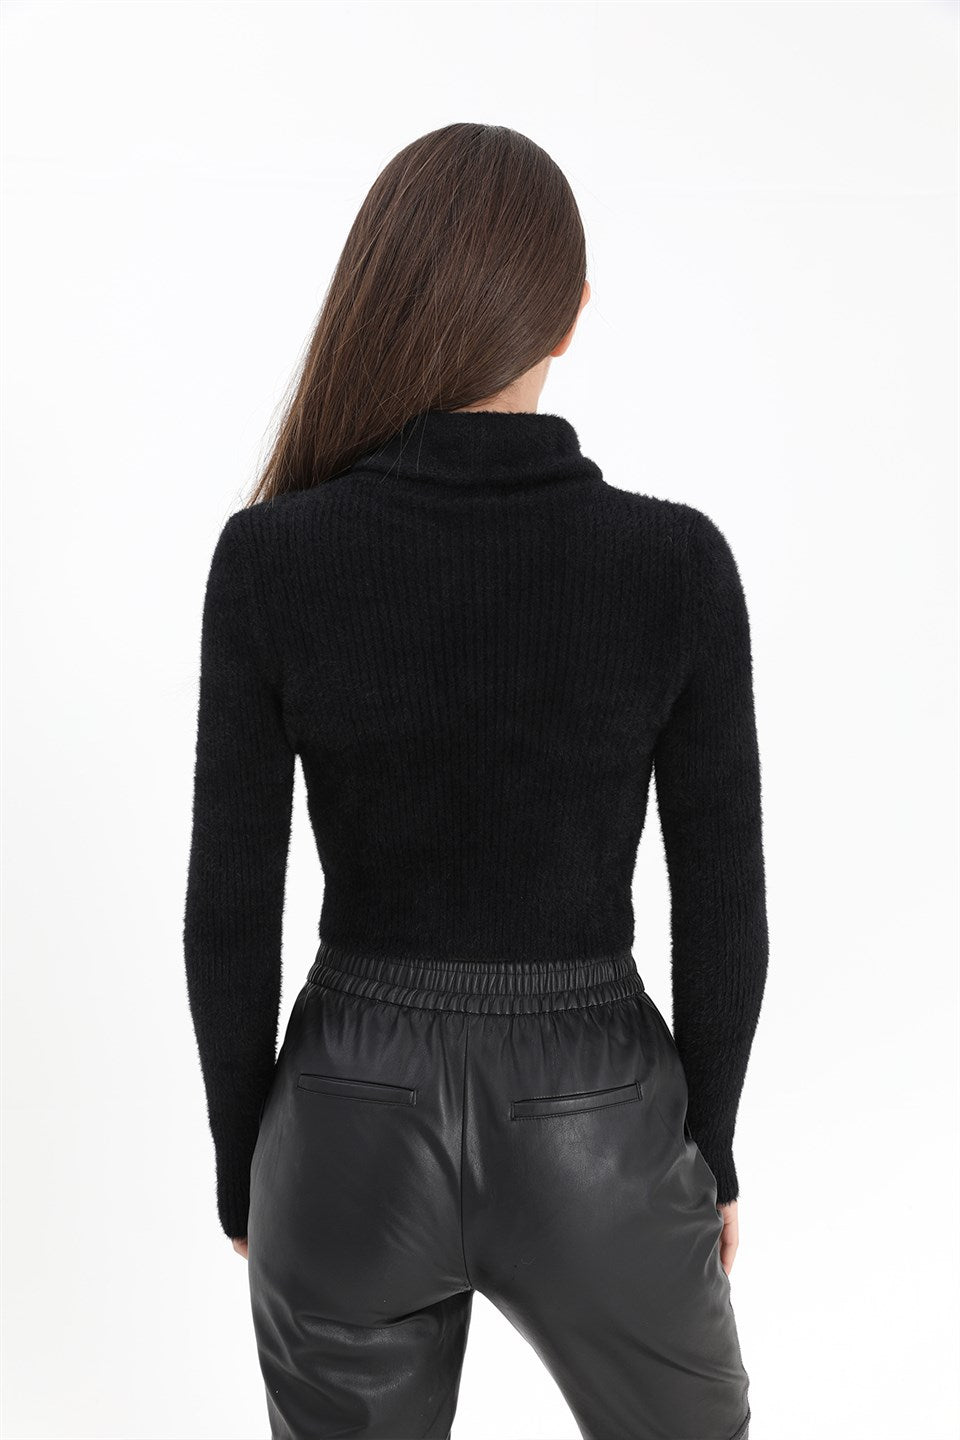 Women's Zipper Corduroy Knitwear Sweater - Black - STREETMODE ™